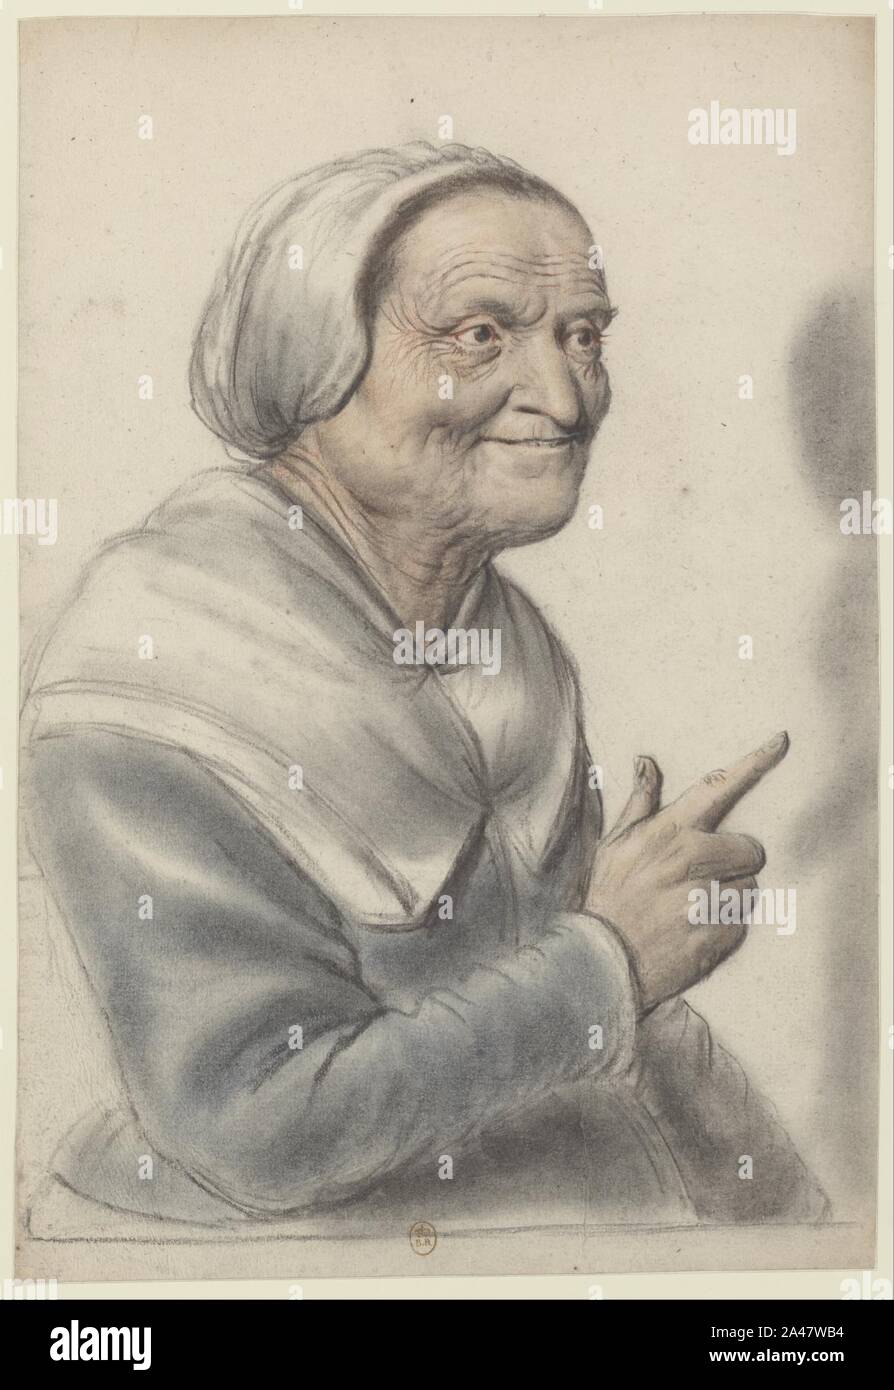 Femme âgée portant une coiffe blanche, l'index pointé, vue de trois Qt à droite (Nicolas Lagneau). Foto Stock